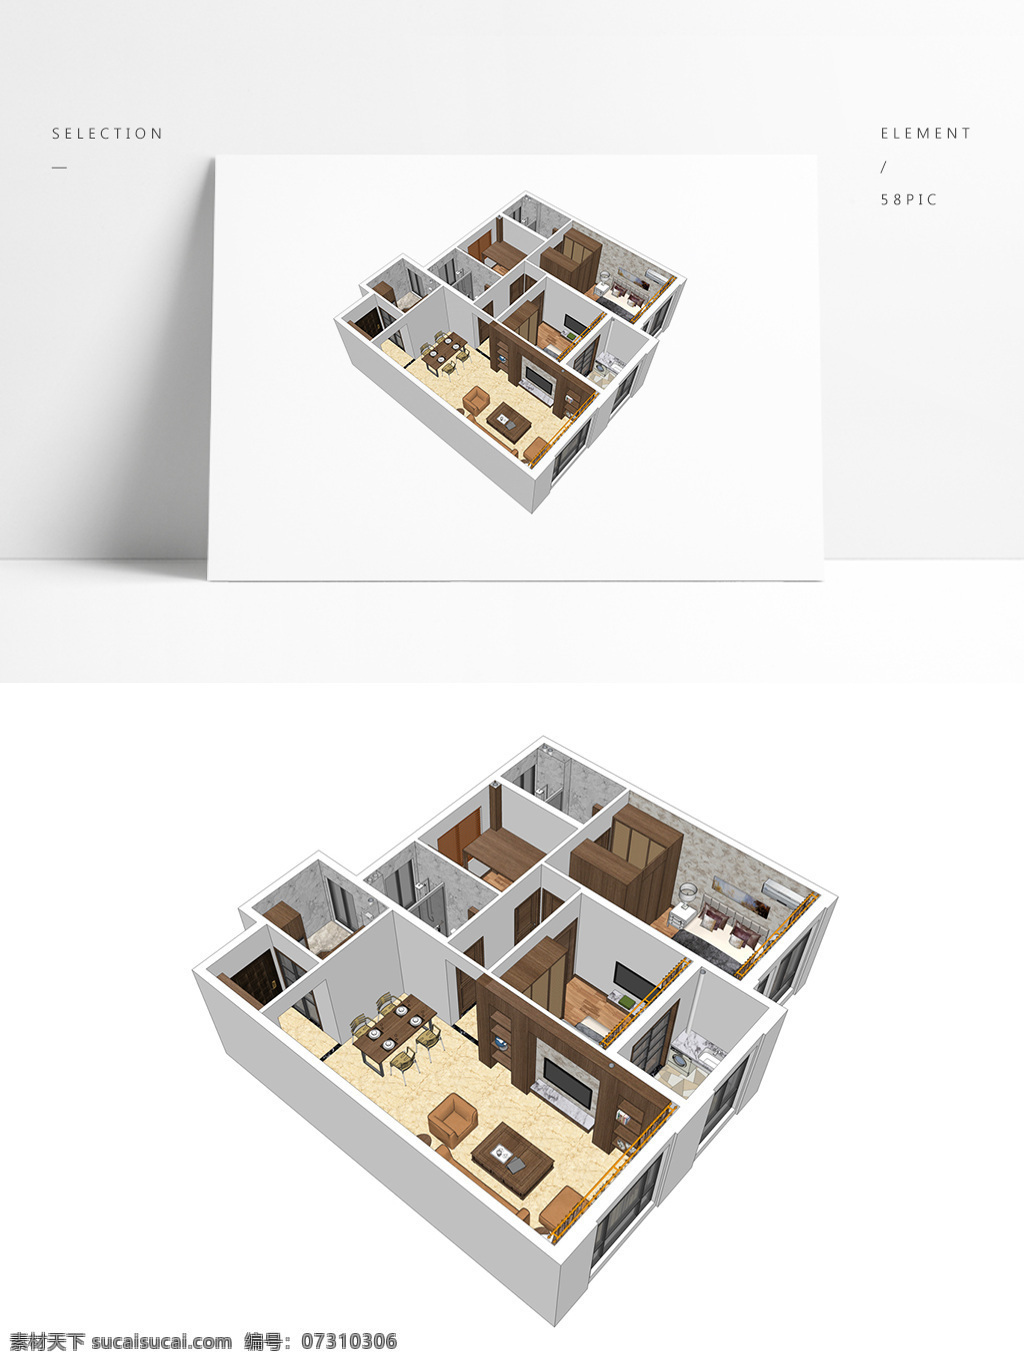 中式 风格 住宅 su 透视 模型 室内空间设计 住宅室内设计 样板房 3d模型 su模型 草图大师模型 家具模型 中式风格